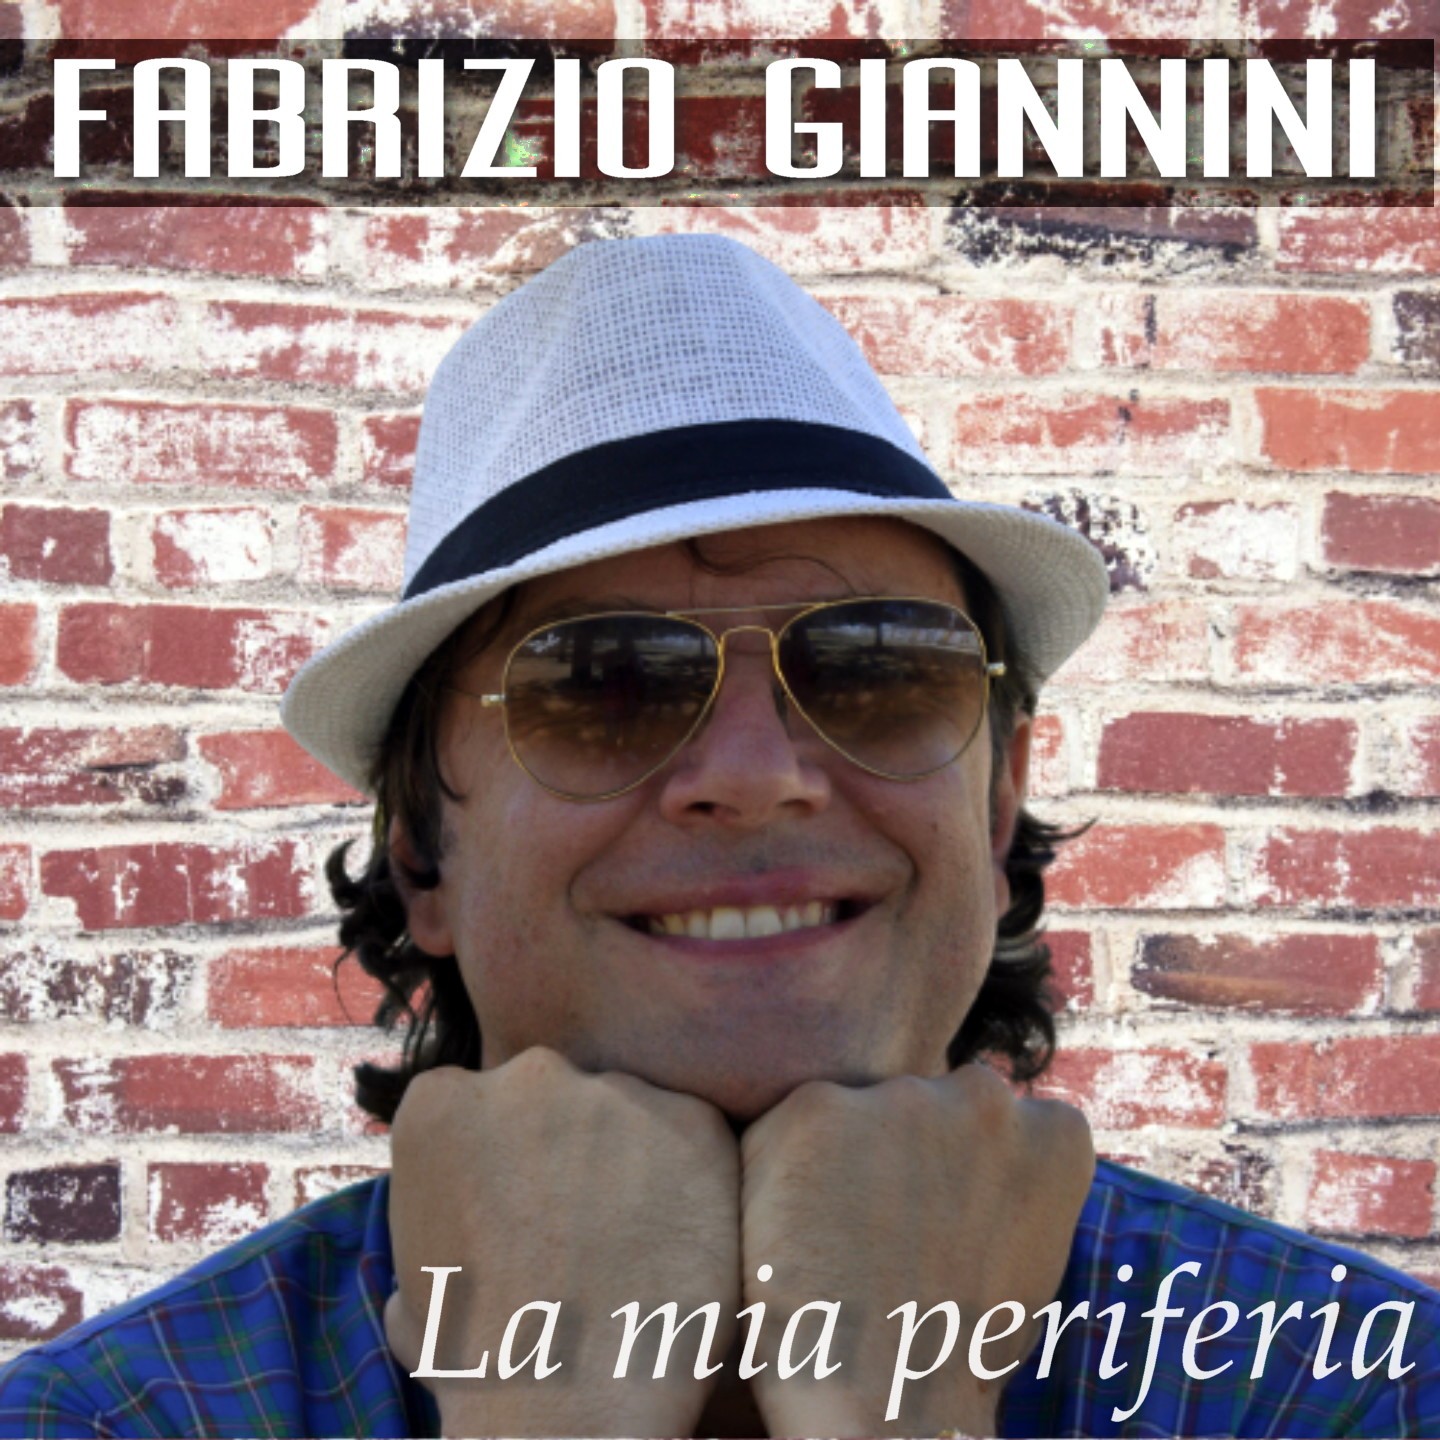 Fabrizio Giannini: vi racconto “La mia periferia”.